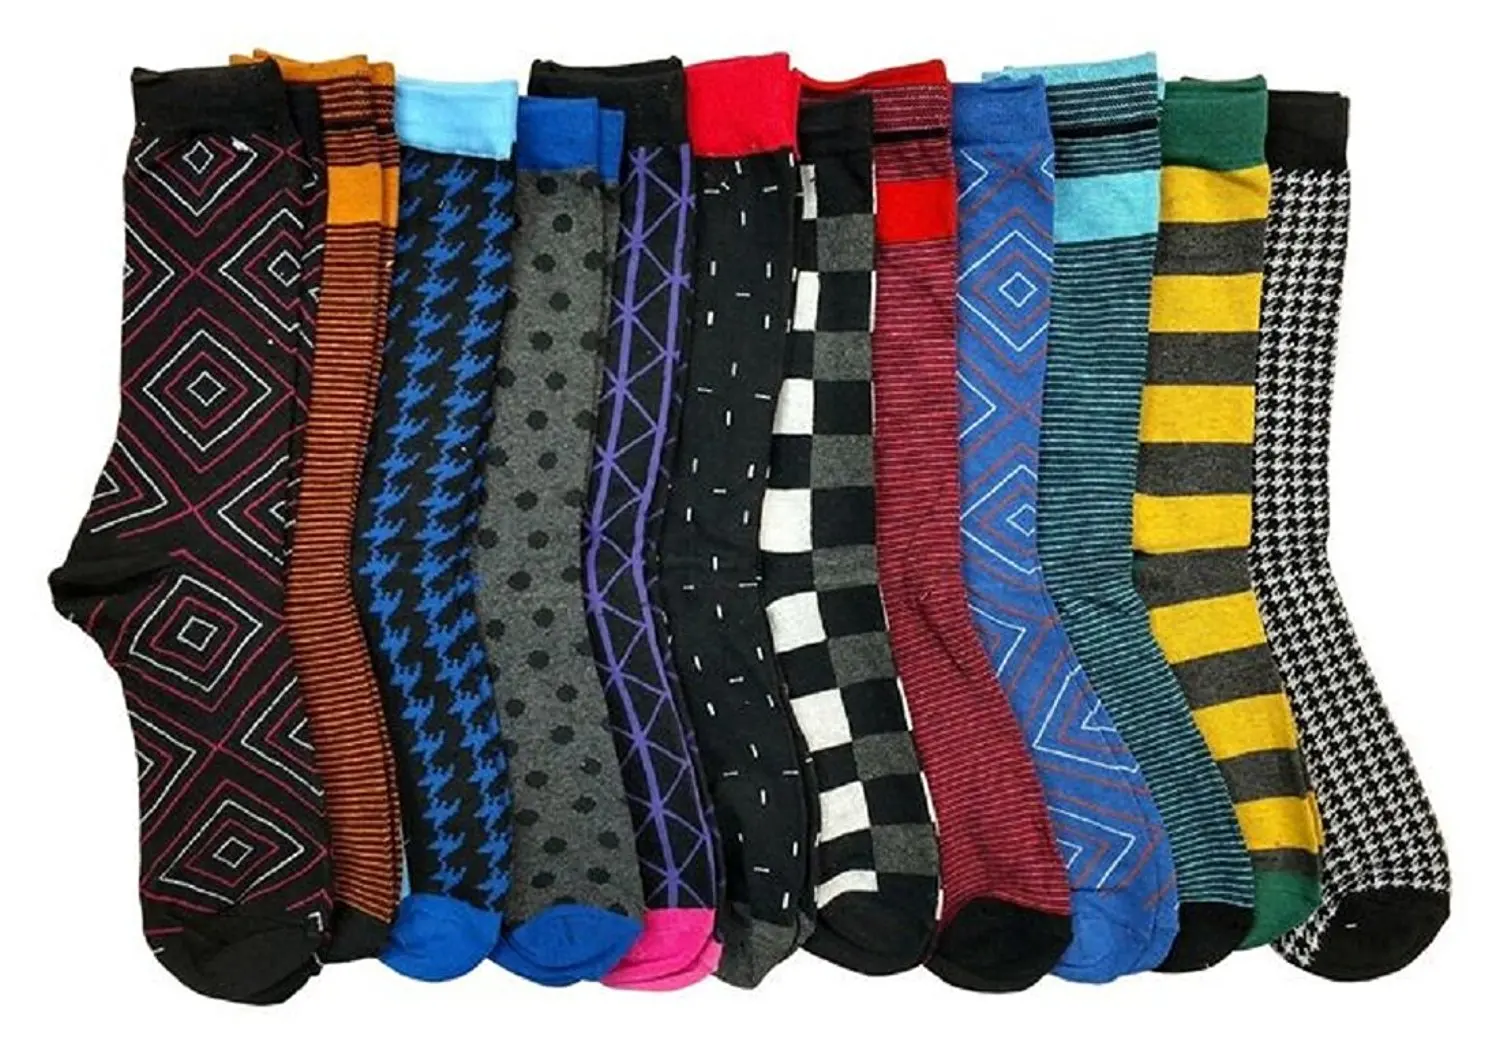 mens designer dress socks